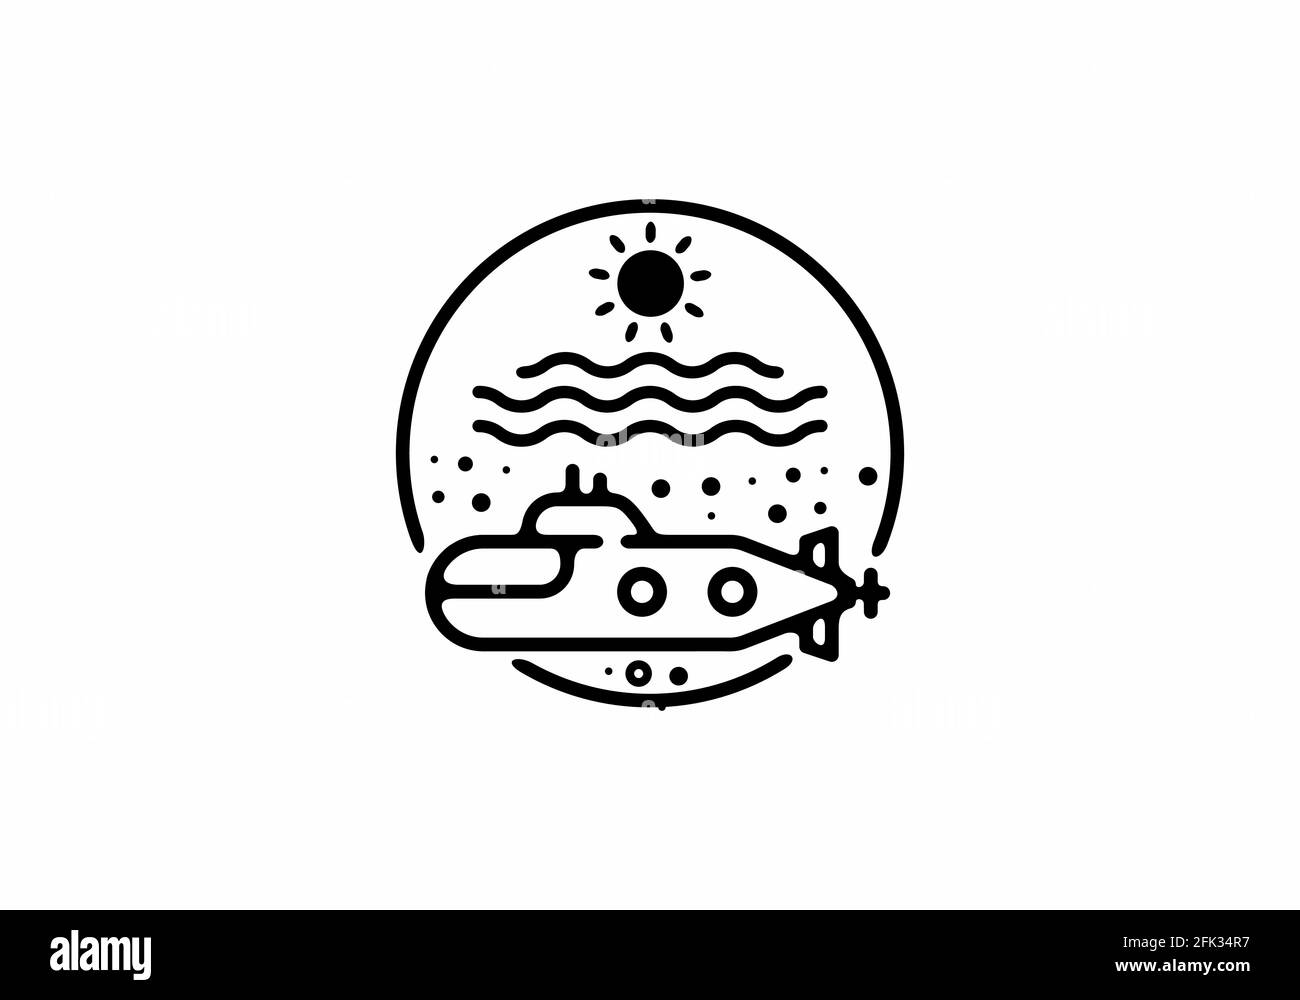 Schwarze Linie Kunst Illustration von U-Boot in Kreisform Design Stock Vektor